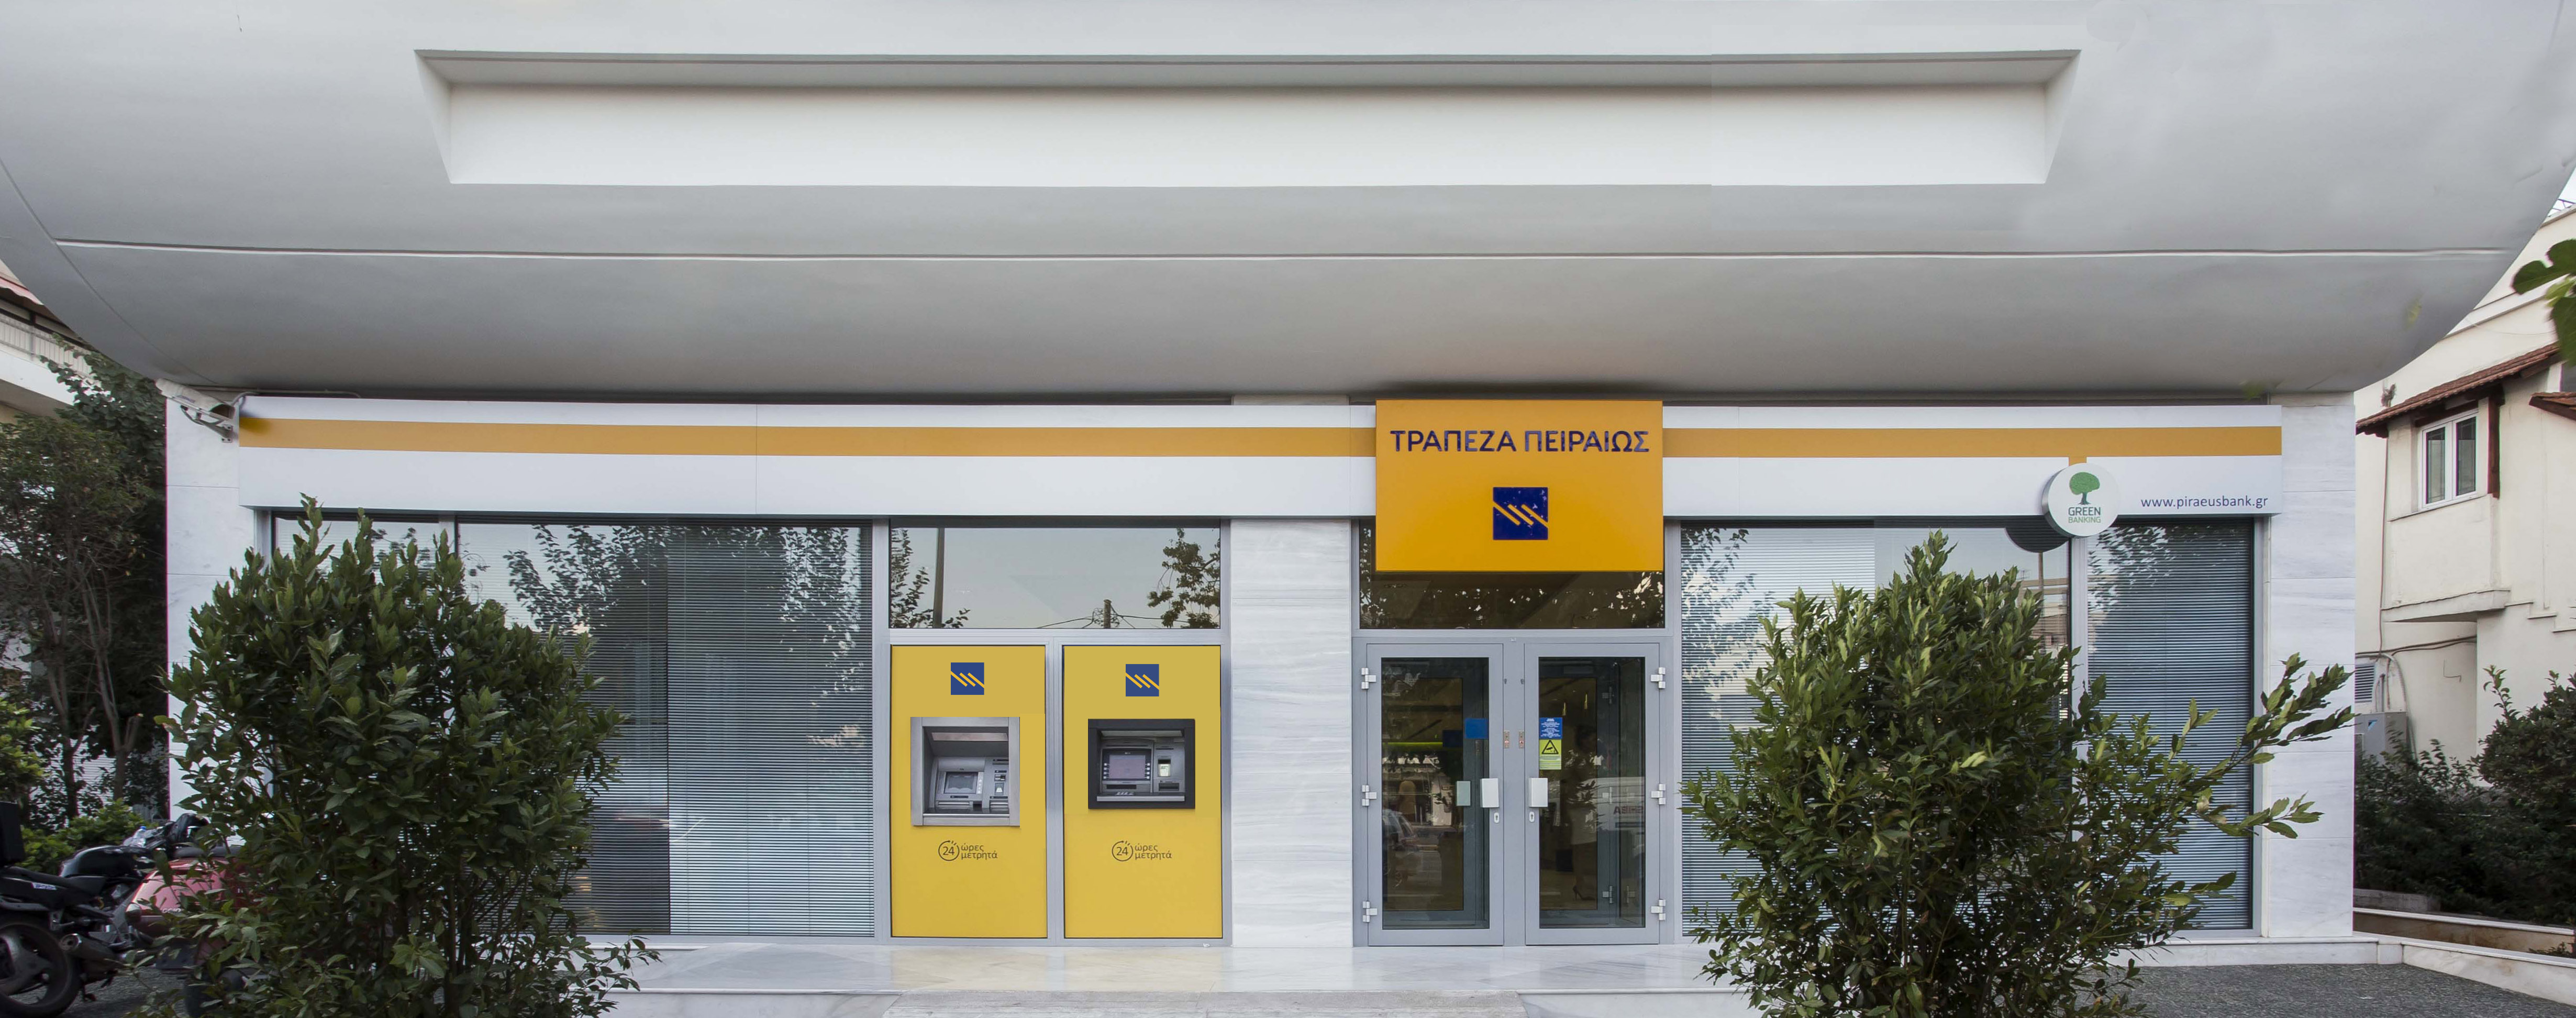 Τράπεζα Πειραιώς: Αντλησε €500 εκ. από τις αγορές με τοκομερίδιο 5%